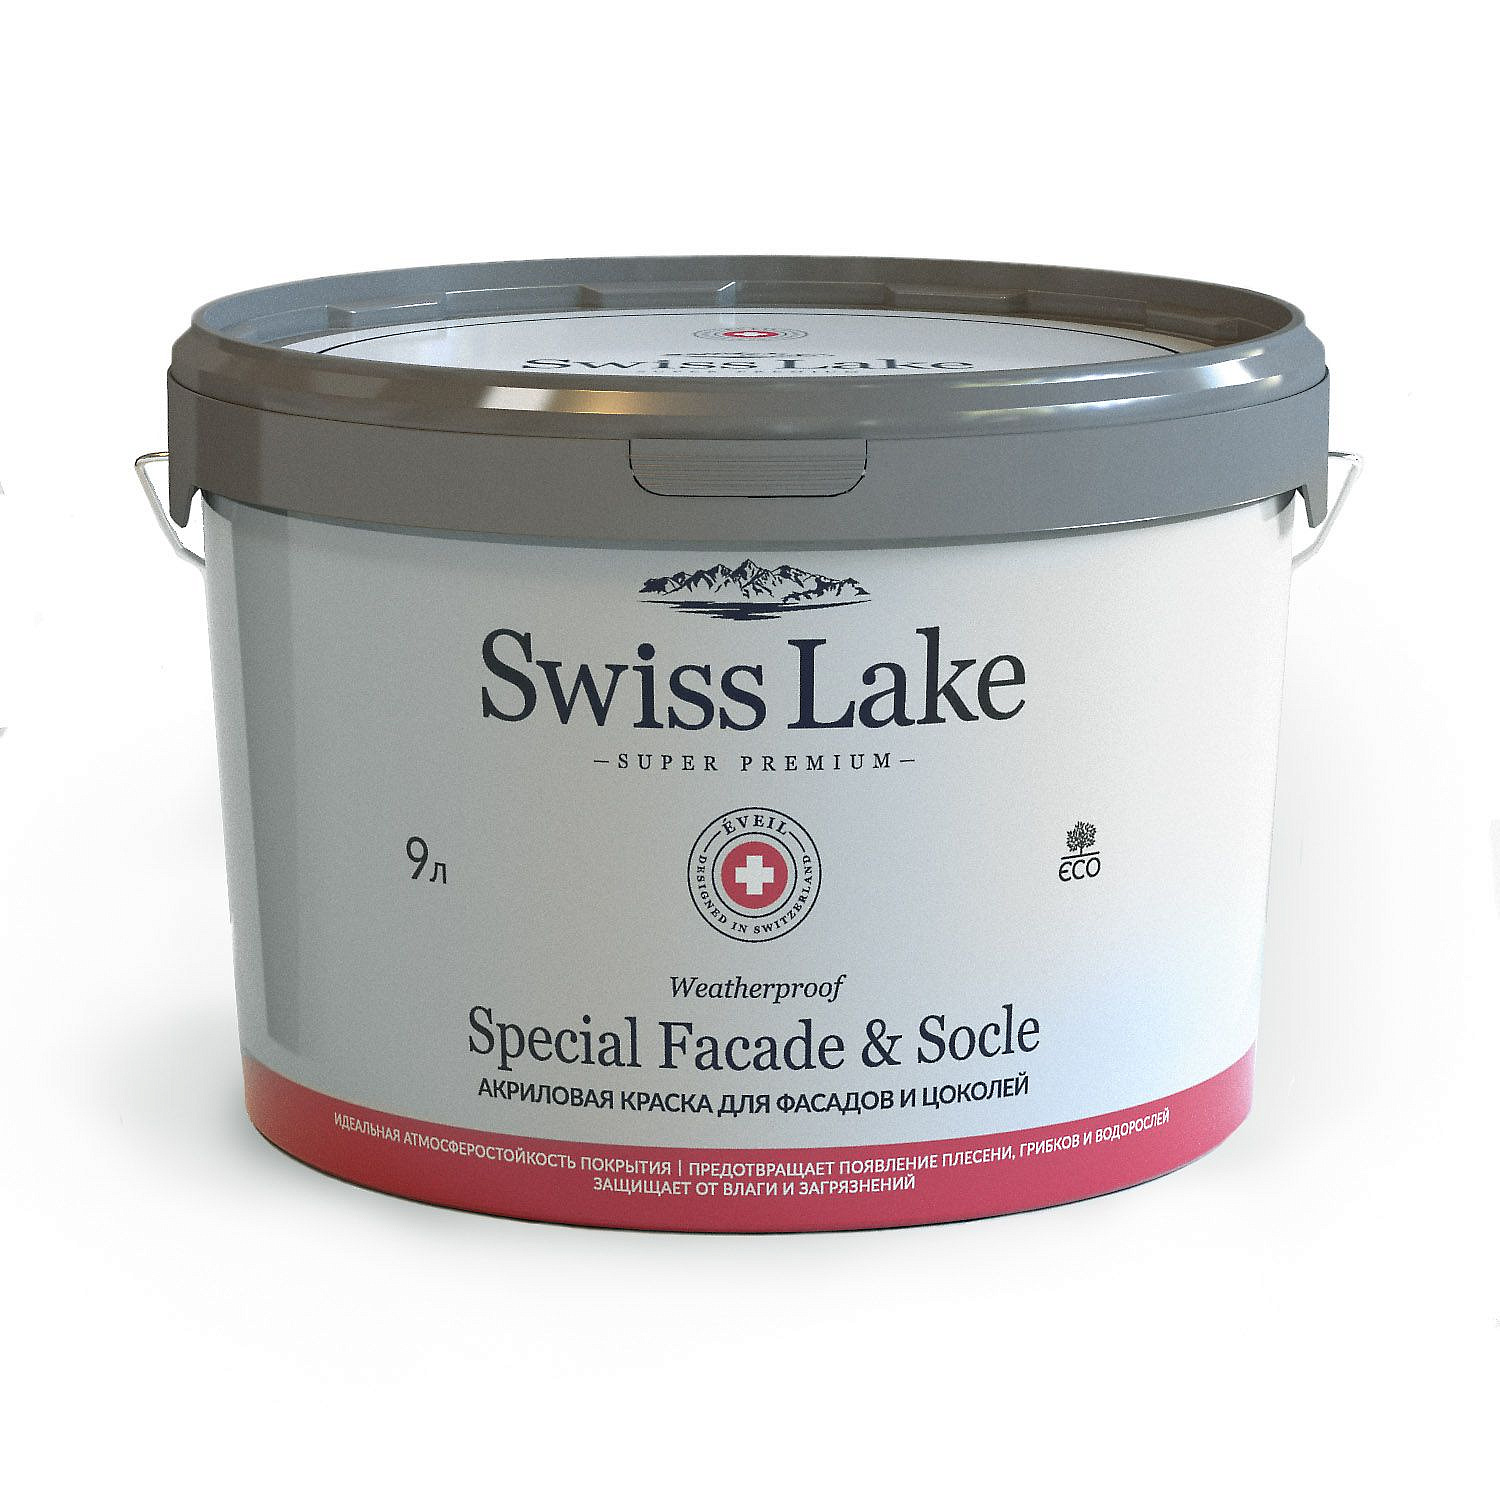 Купить акриловая краска для фасадов и цоколей special faсade & socle (swiss lake) от официального дилера SWISS LAKE